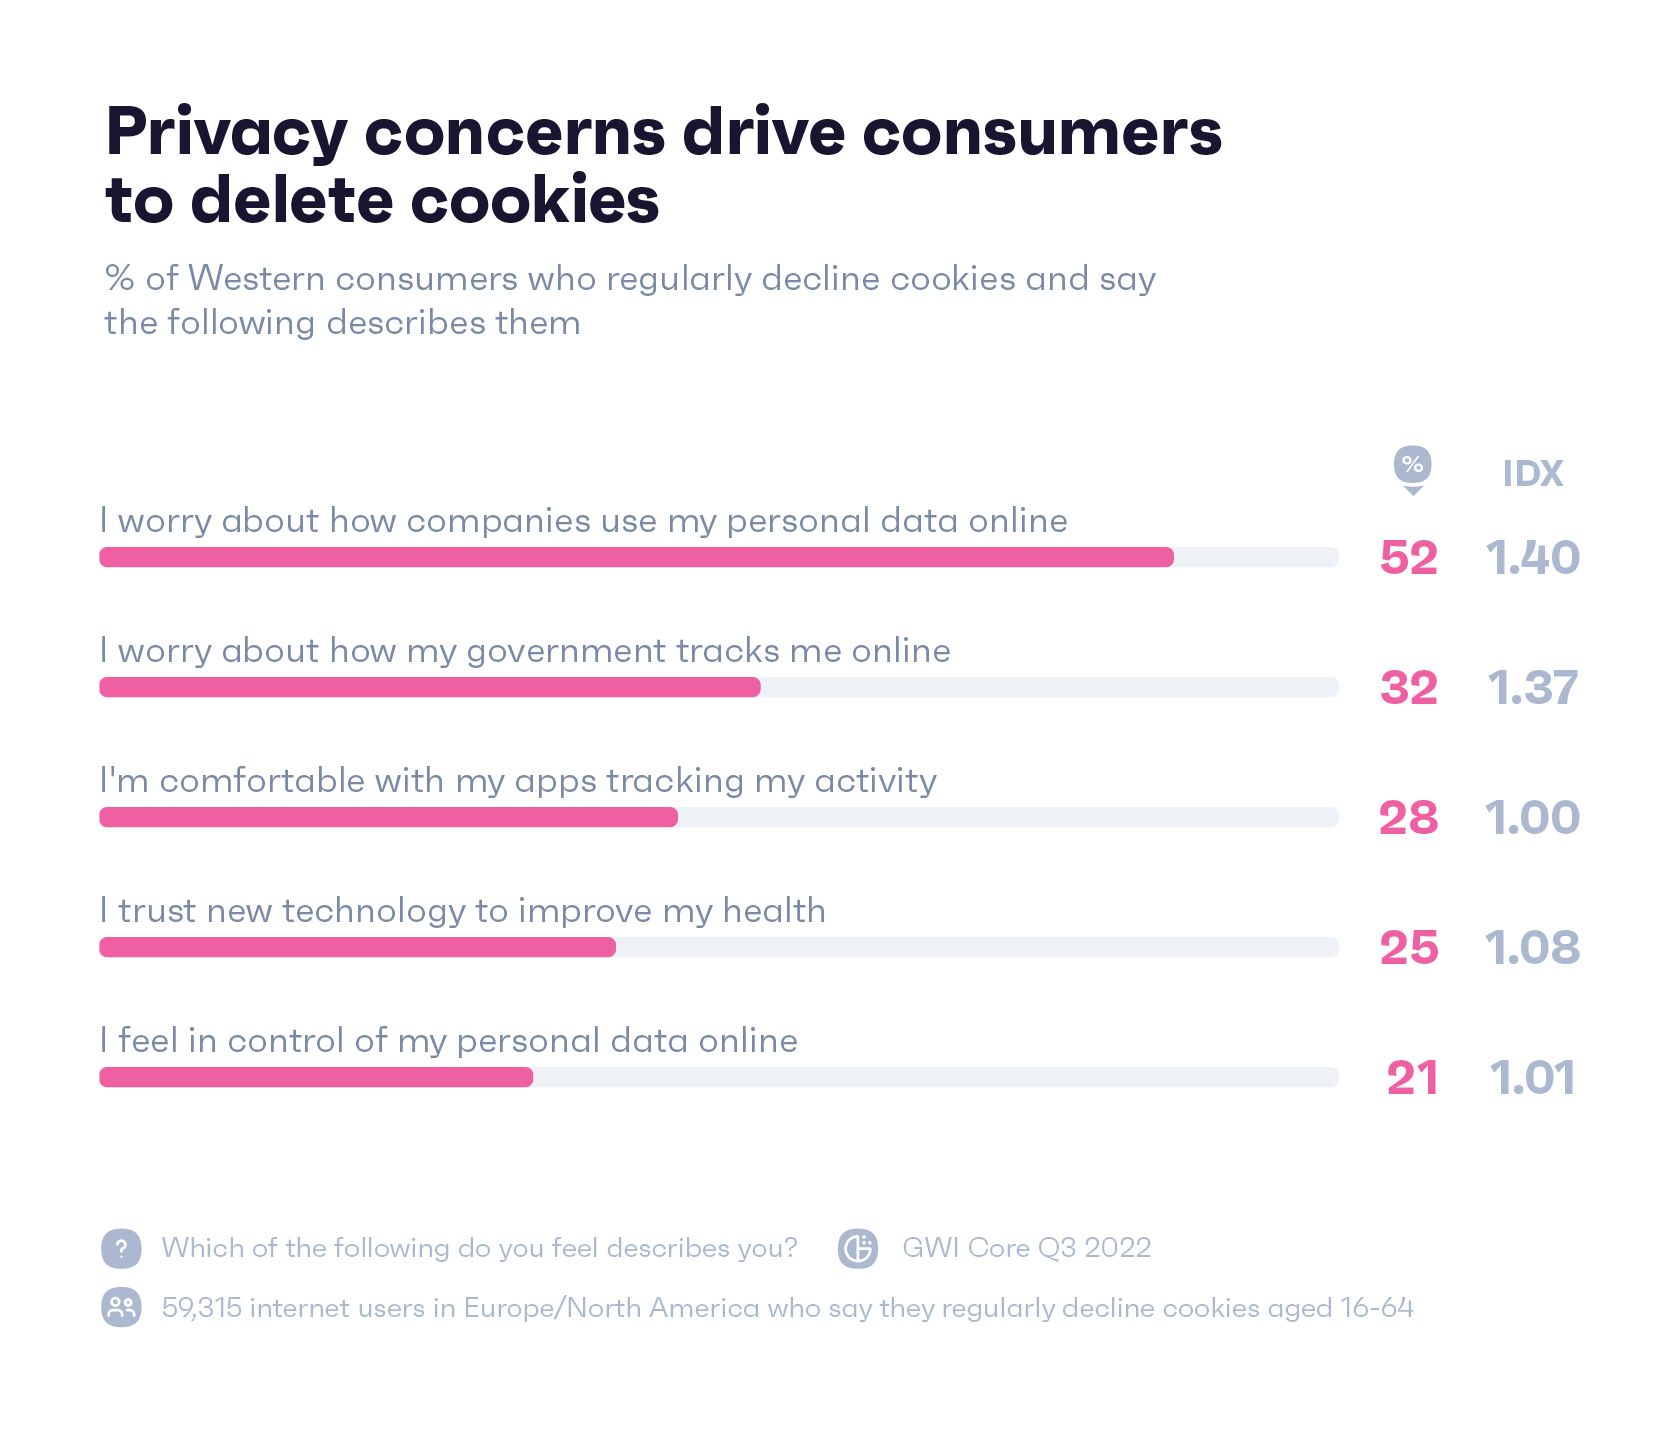 Grafico che mostra come si descriverebbero i consumatori occidentali che rifiutano regolarmente i cookie